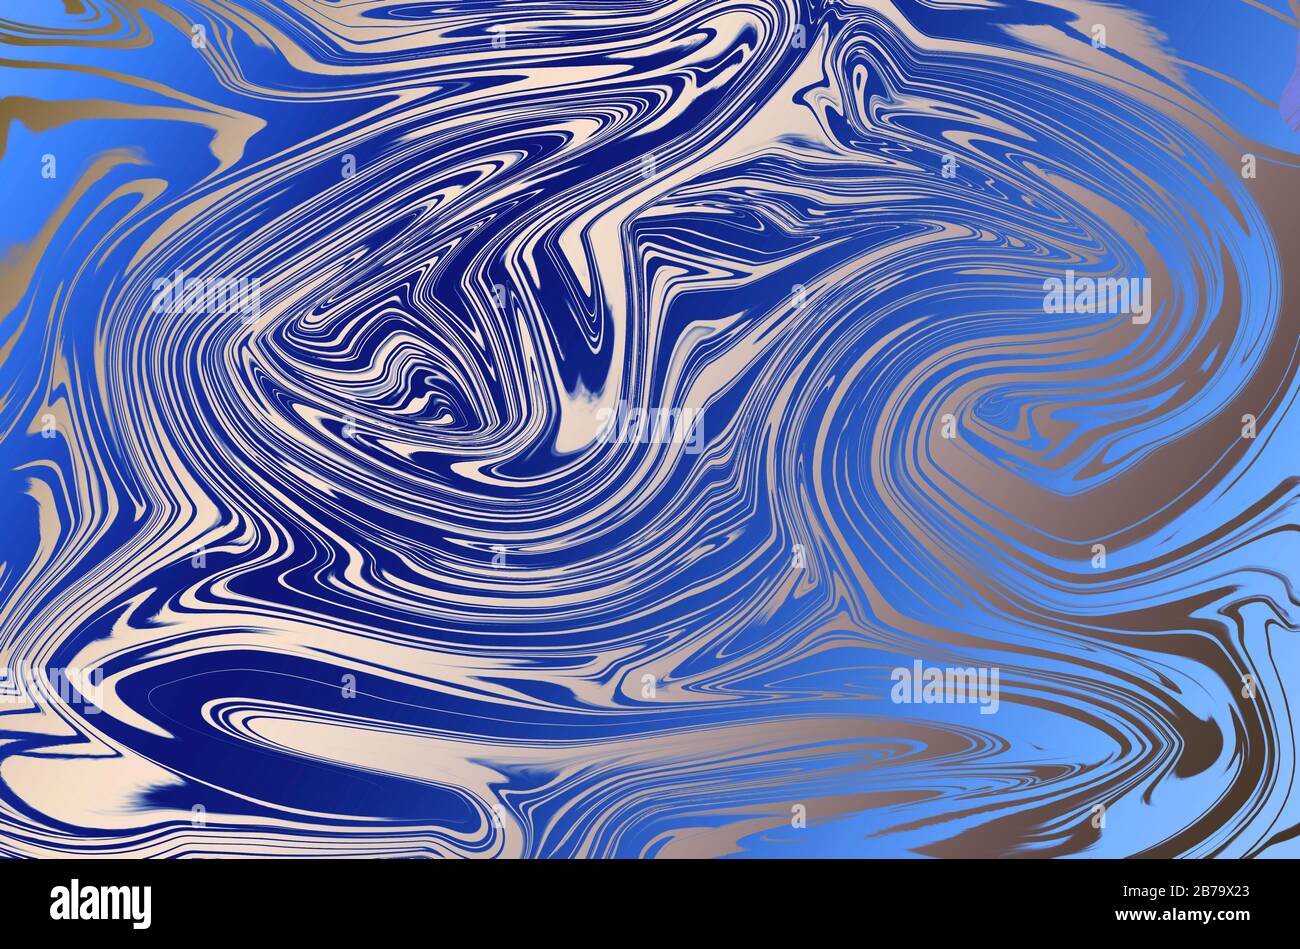 Arrière-plan numérique abstrait avec effet de fluidité dans les couleurs bleu et argent trandy. Modèle d'art numérique de luxe pour l'emballage, l'emballage, la ferraille Banque D'Images